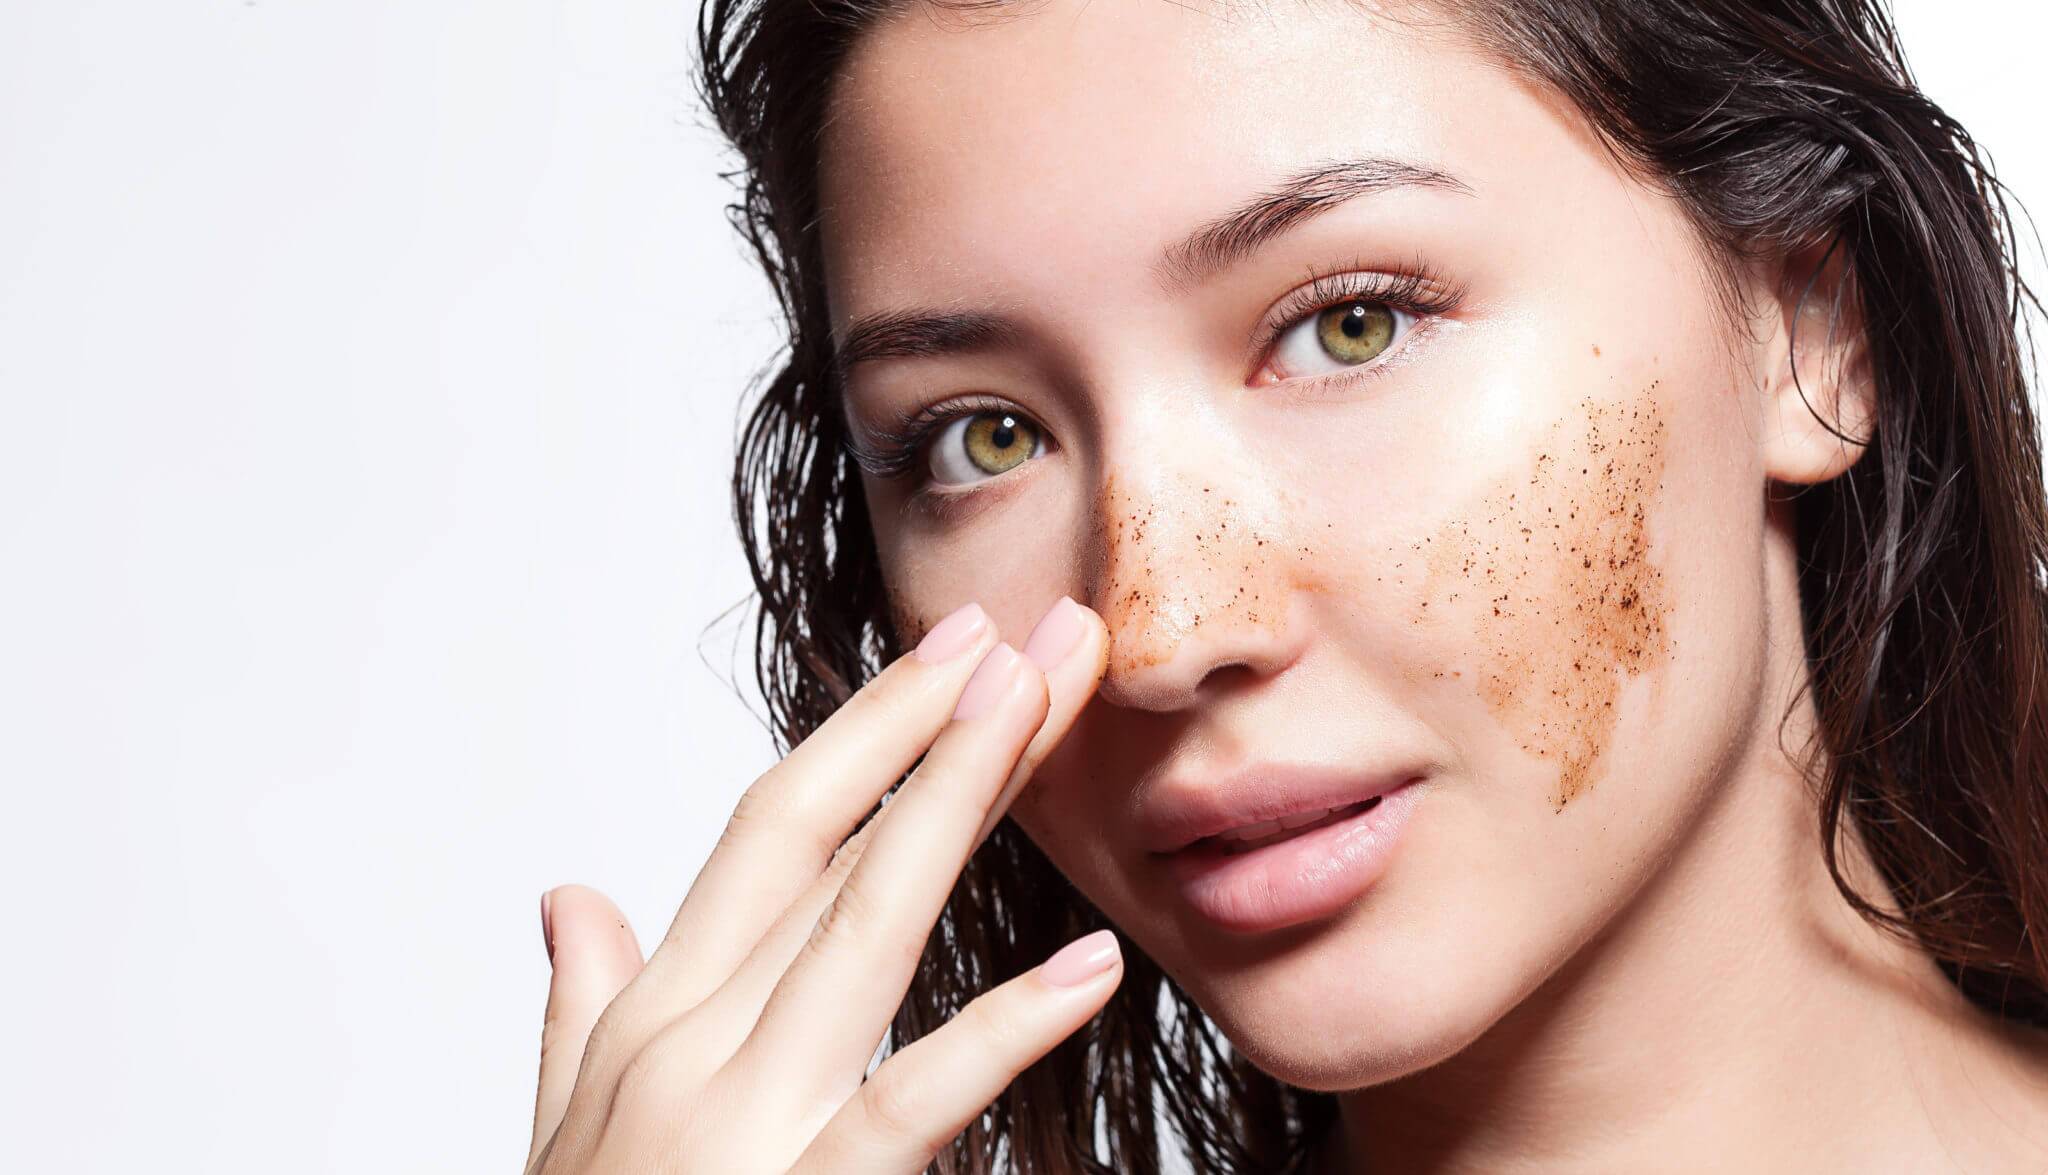 Уход за проблемной кожей лица и правила макияжа